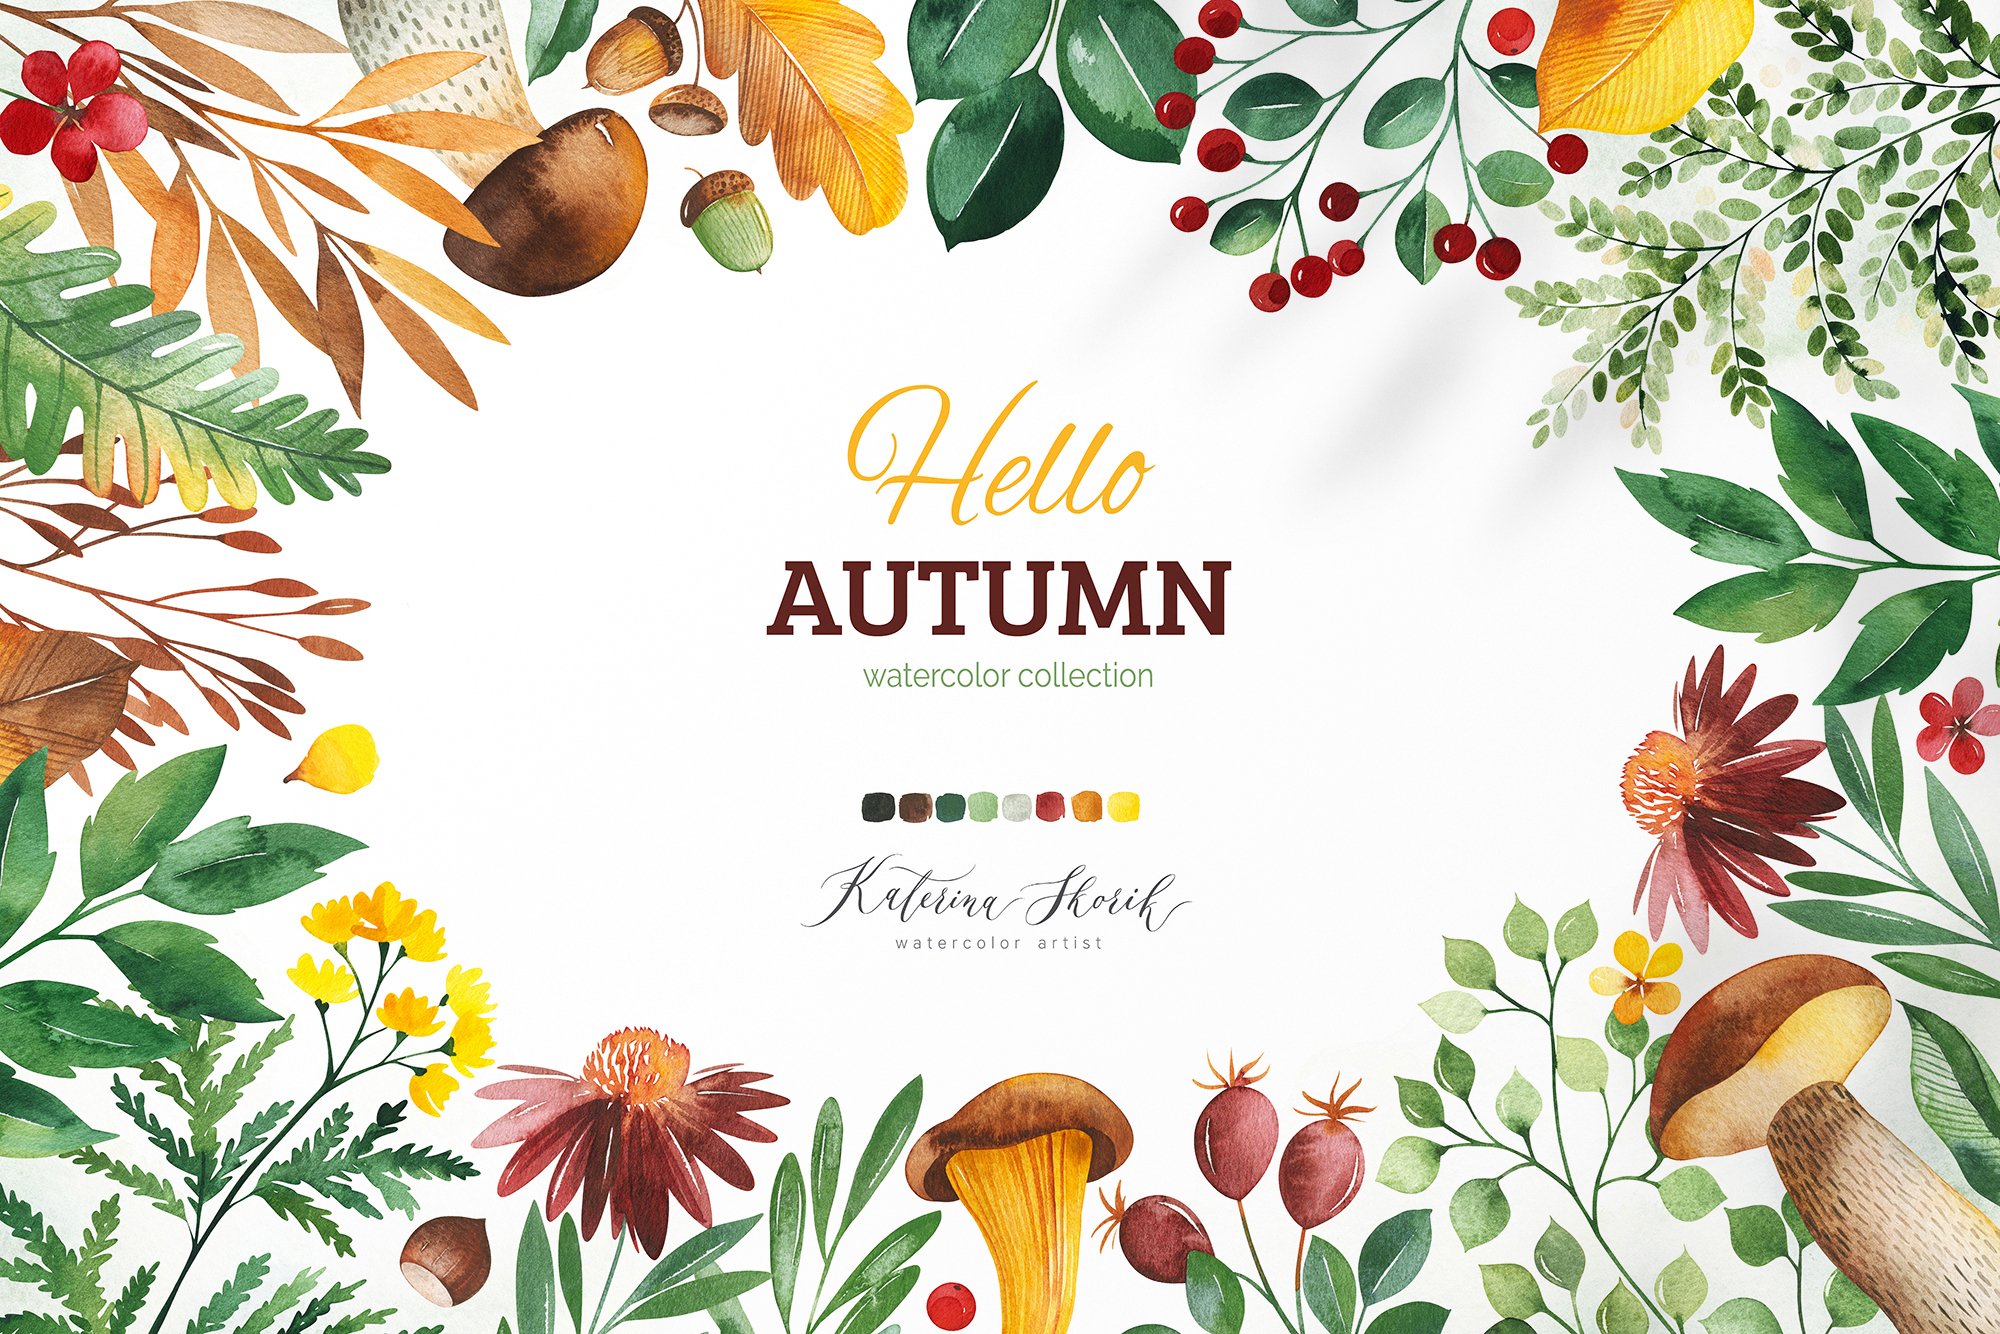 Hello, Autumn cover image.